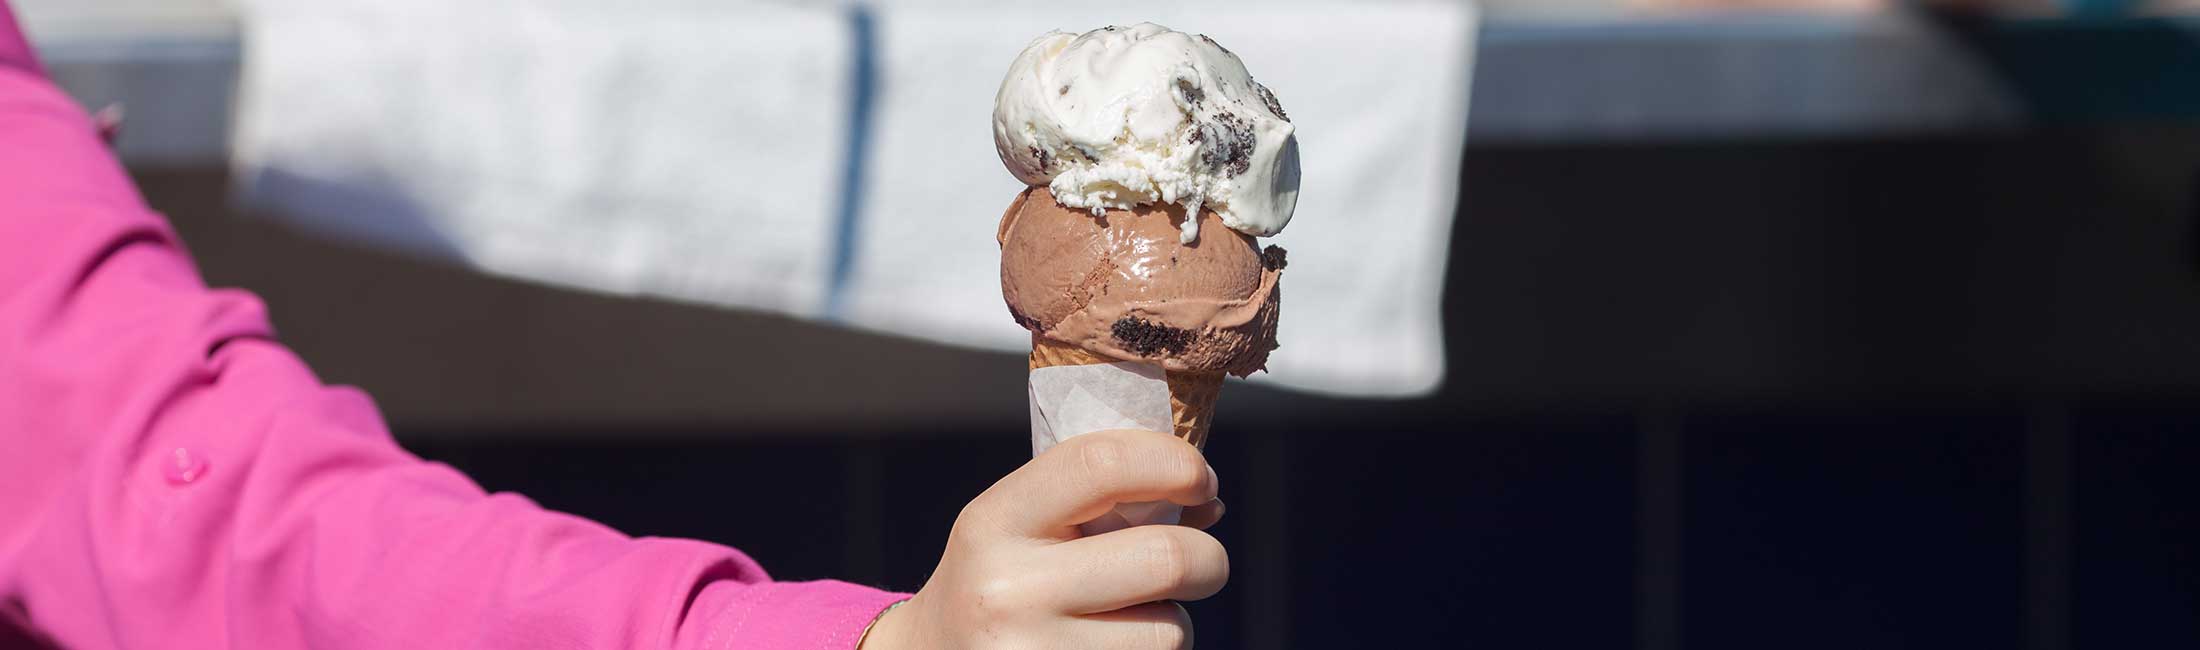 Big Dipper Ice Cream Voted Americas Best Ice Cream Ever